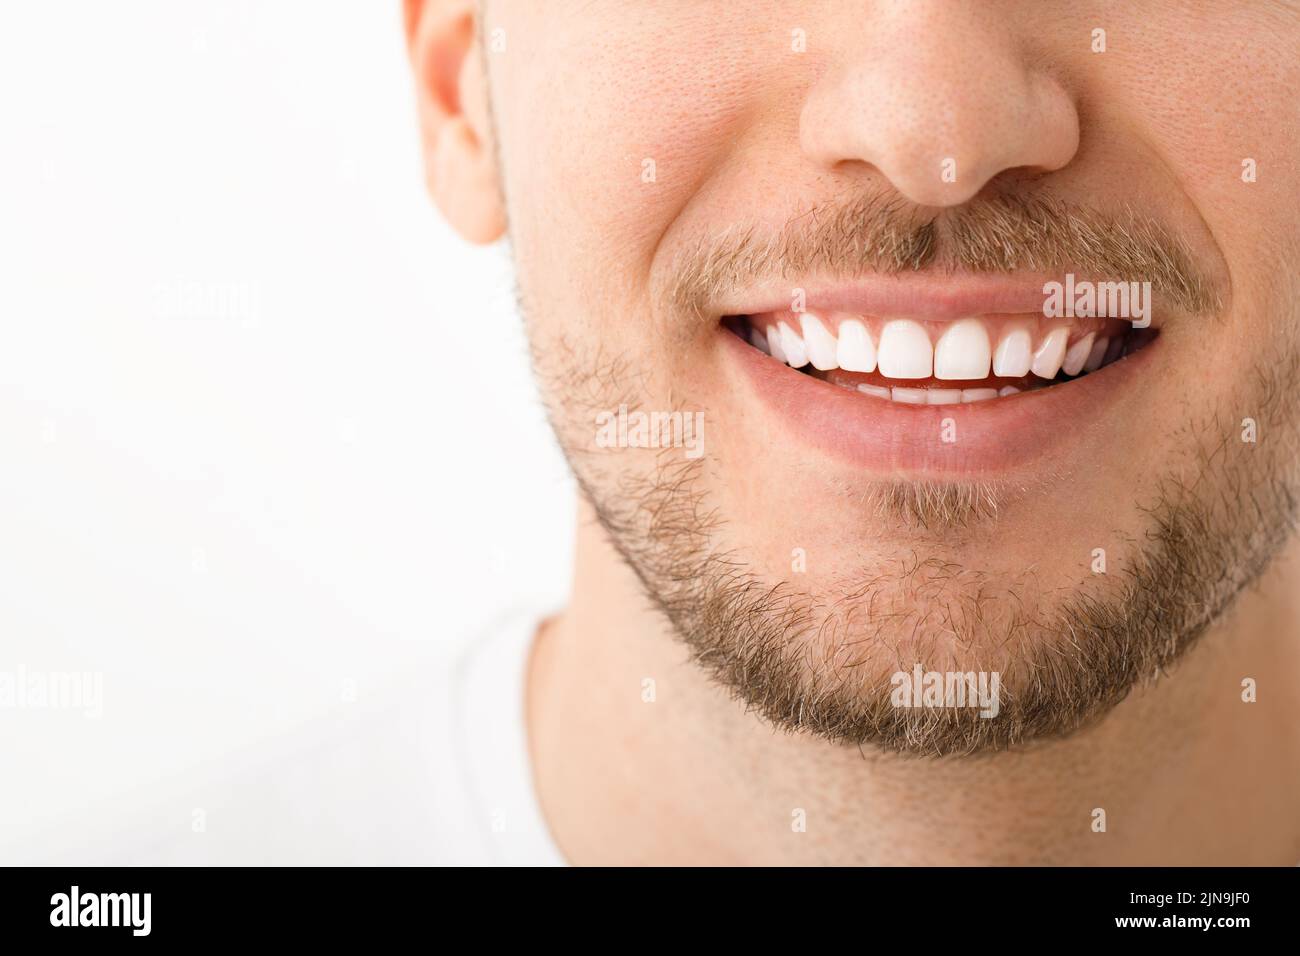 Un bel homme est souriant, un sourire aux dents blanches. Gros plan. Arrière-plan blanc avec espace de copie. Banque D'Images